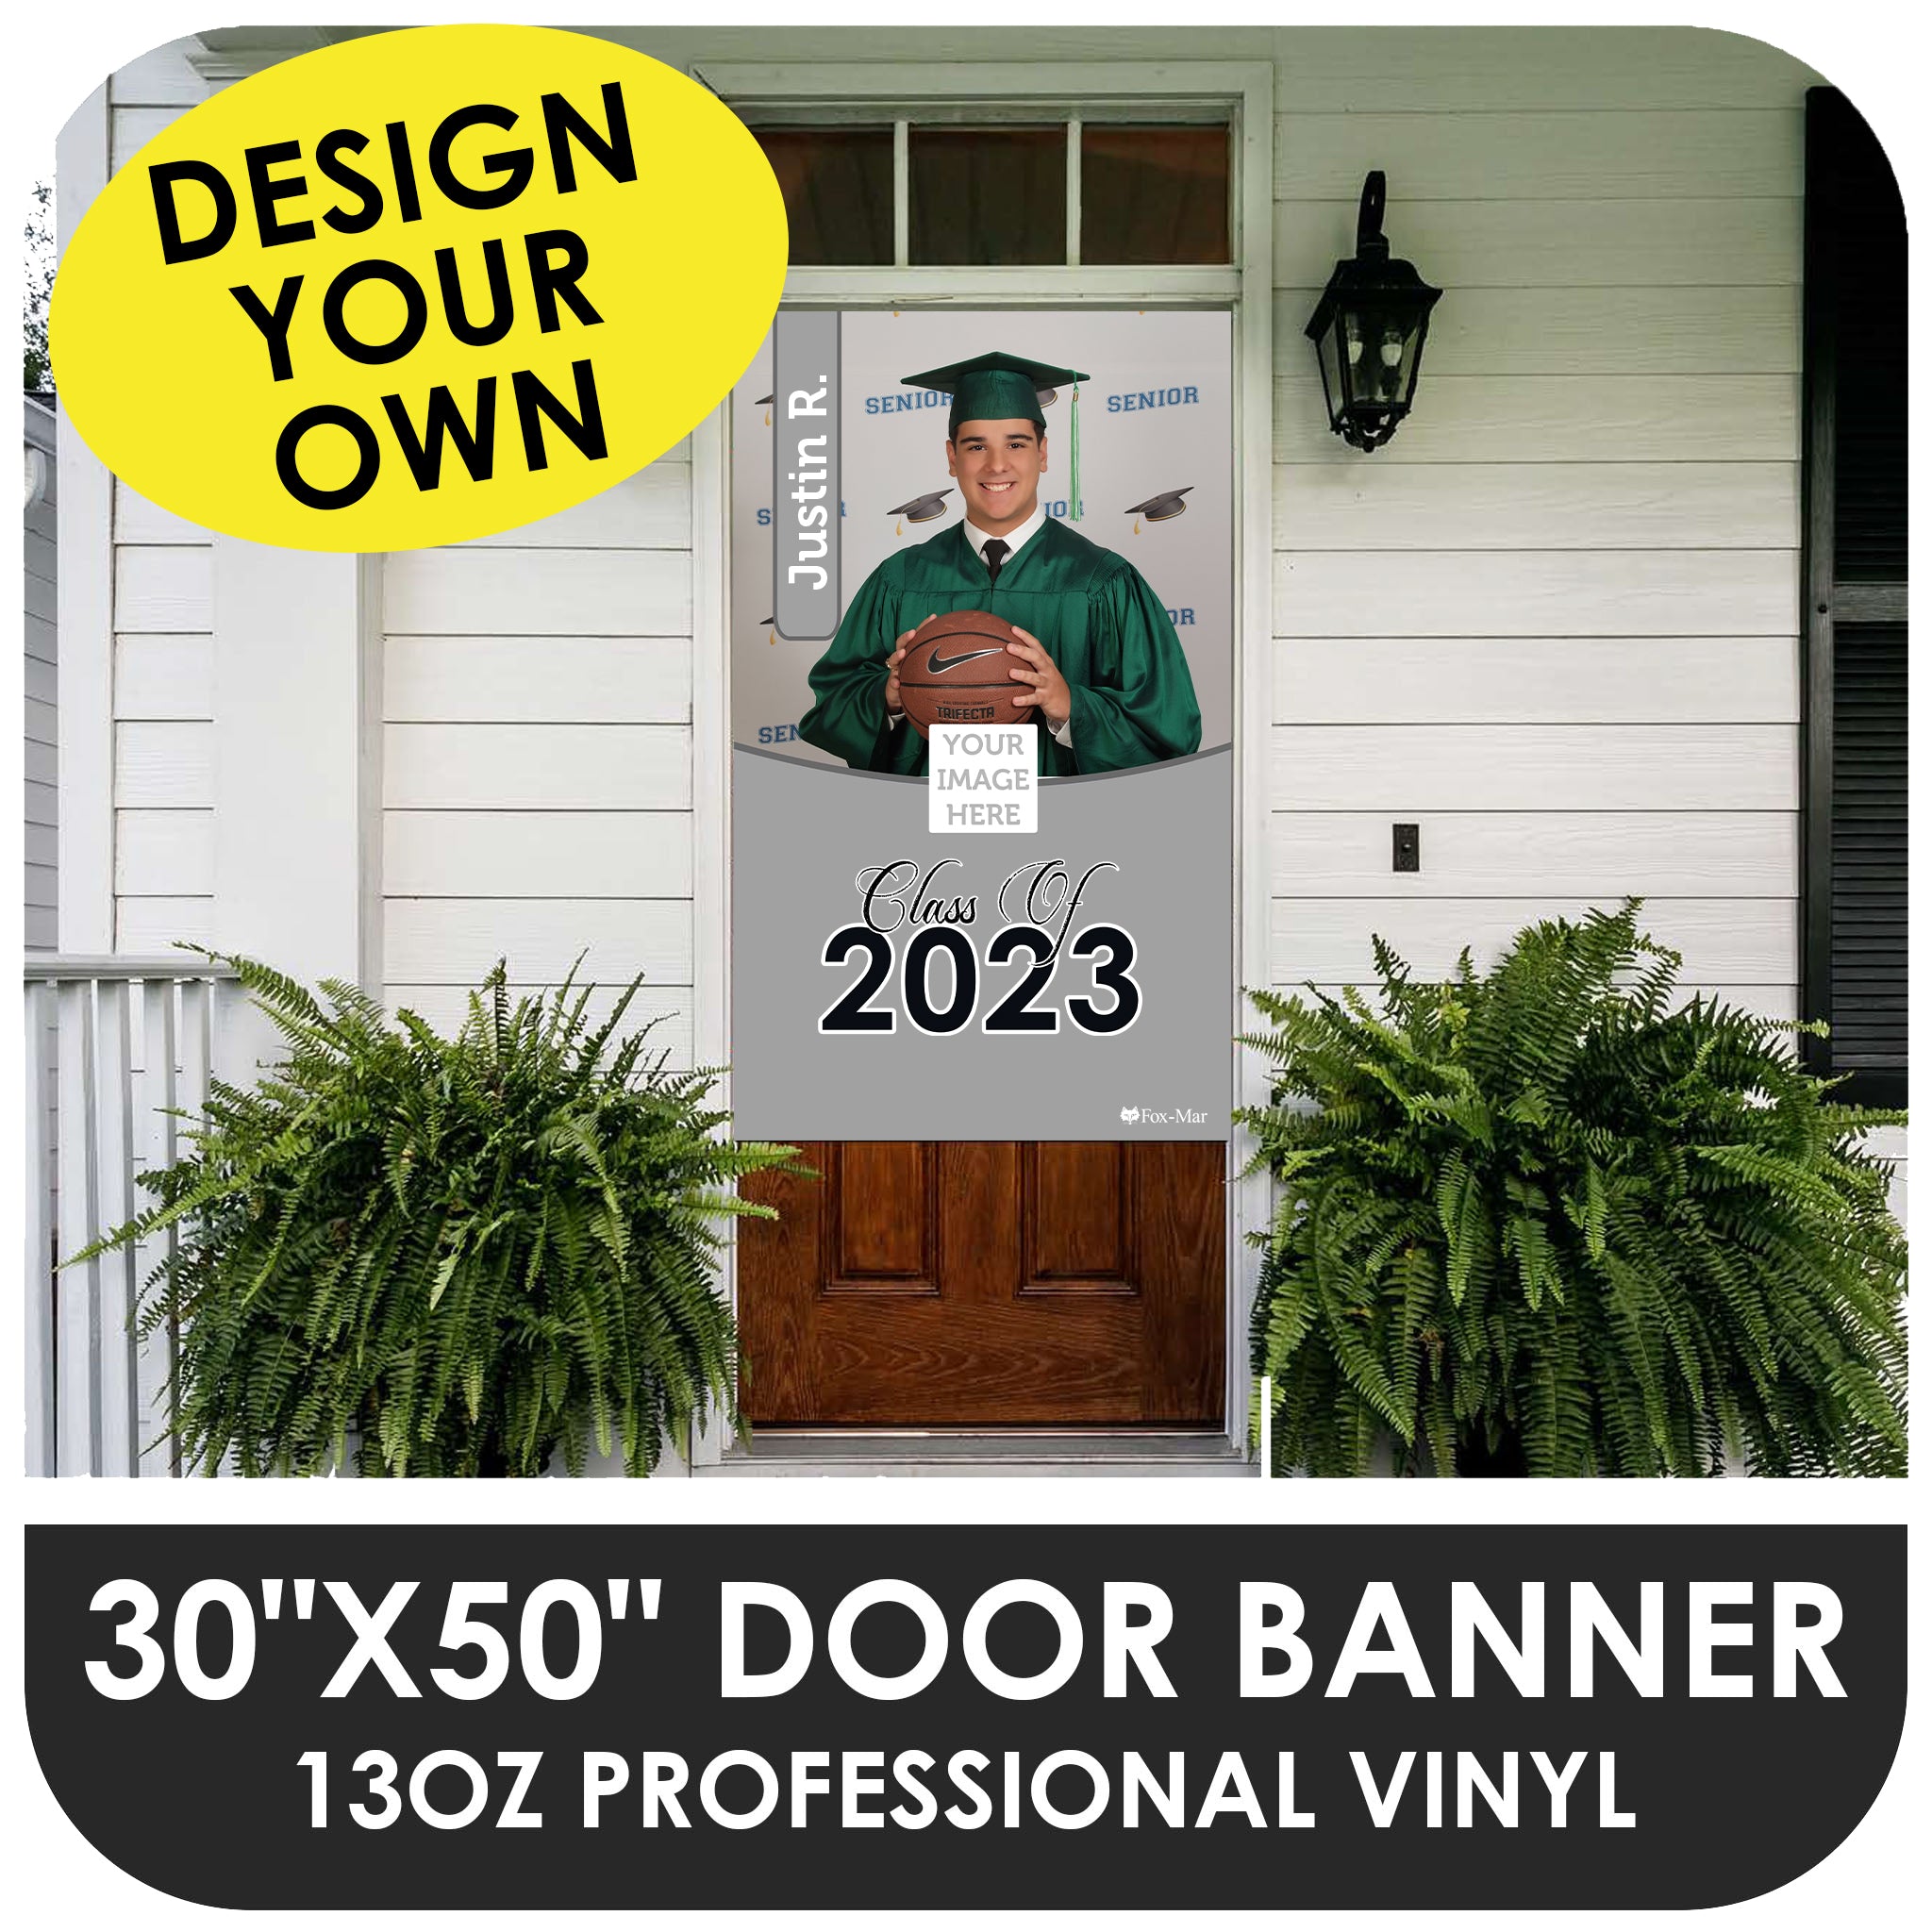 Create Your Own - Door Banner